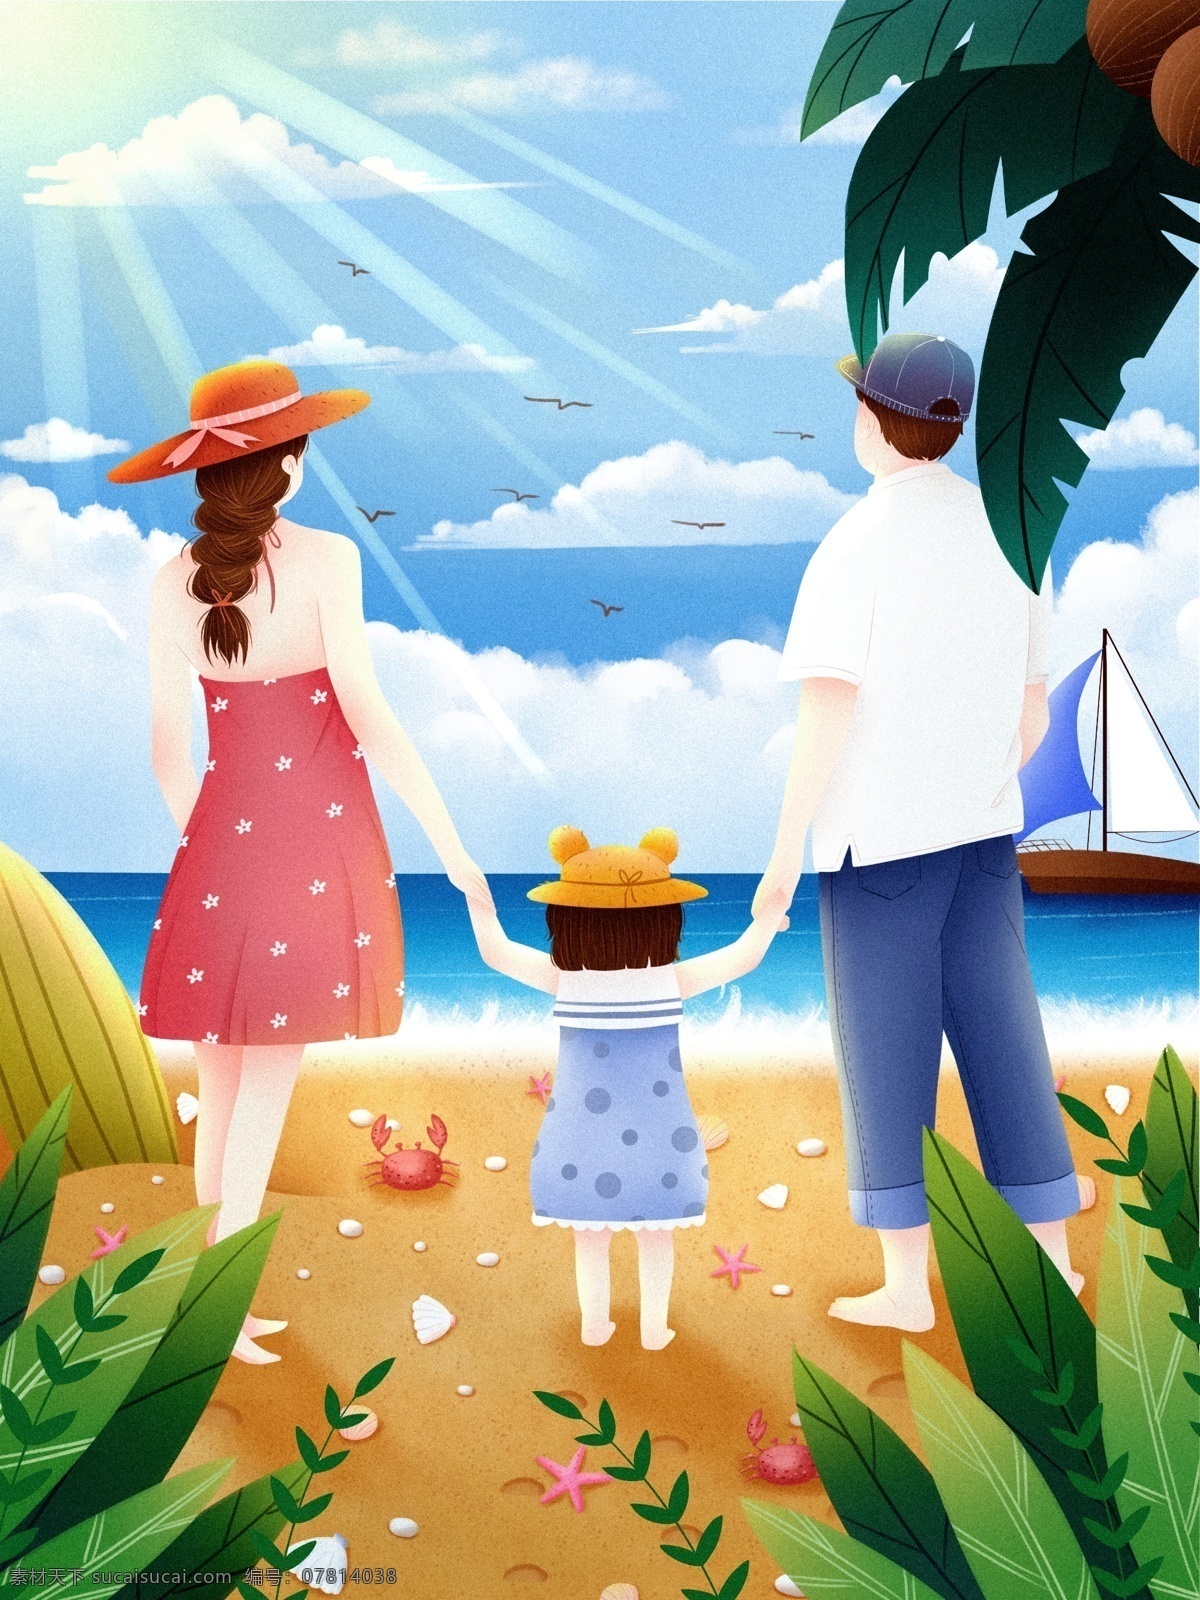 世界 幸福 日 温馨 一家人 插画 世界幸福日 幸福日 母亲 孩子 母爱 可爱 治愈 浪漫 唯美 海边 沙滩